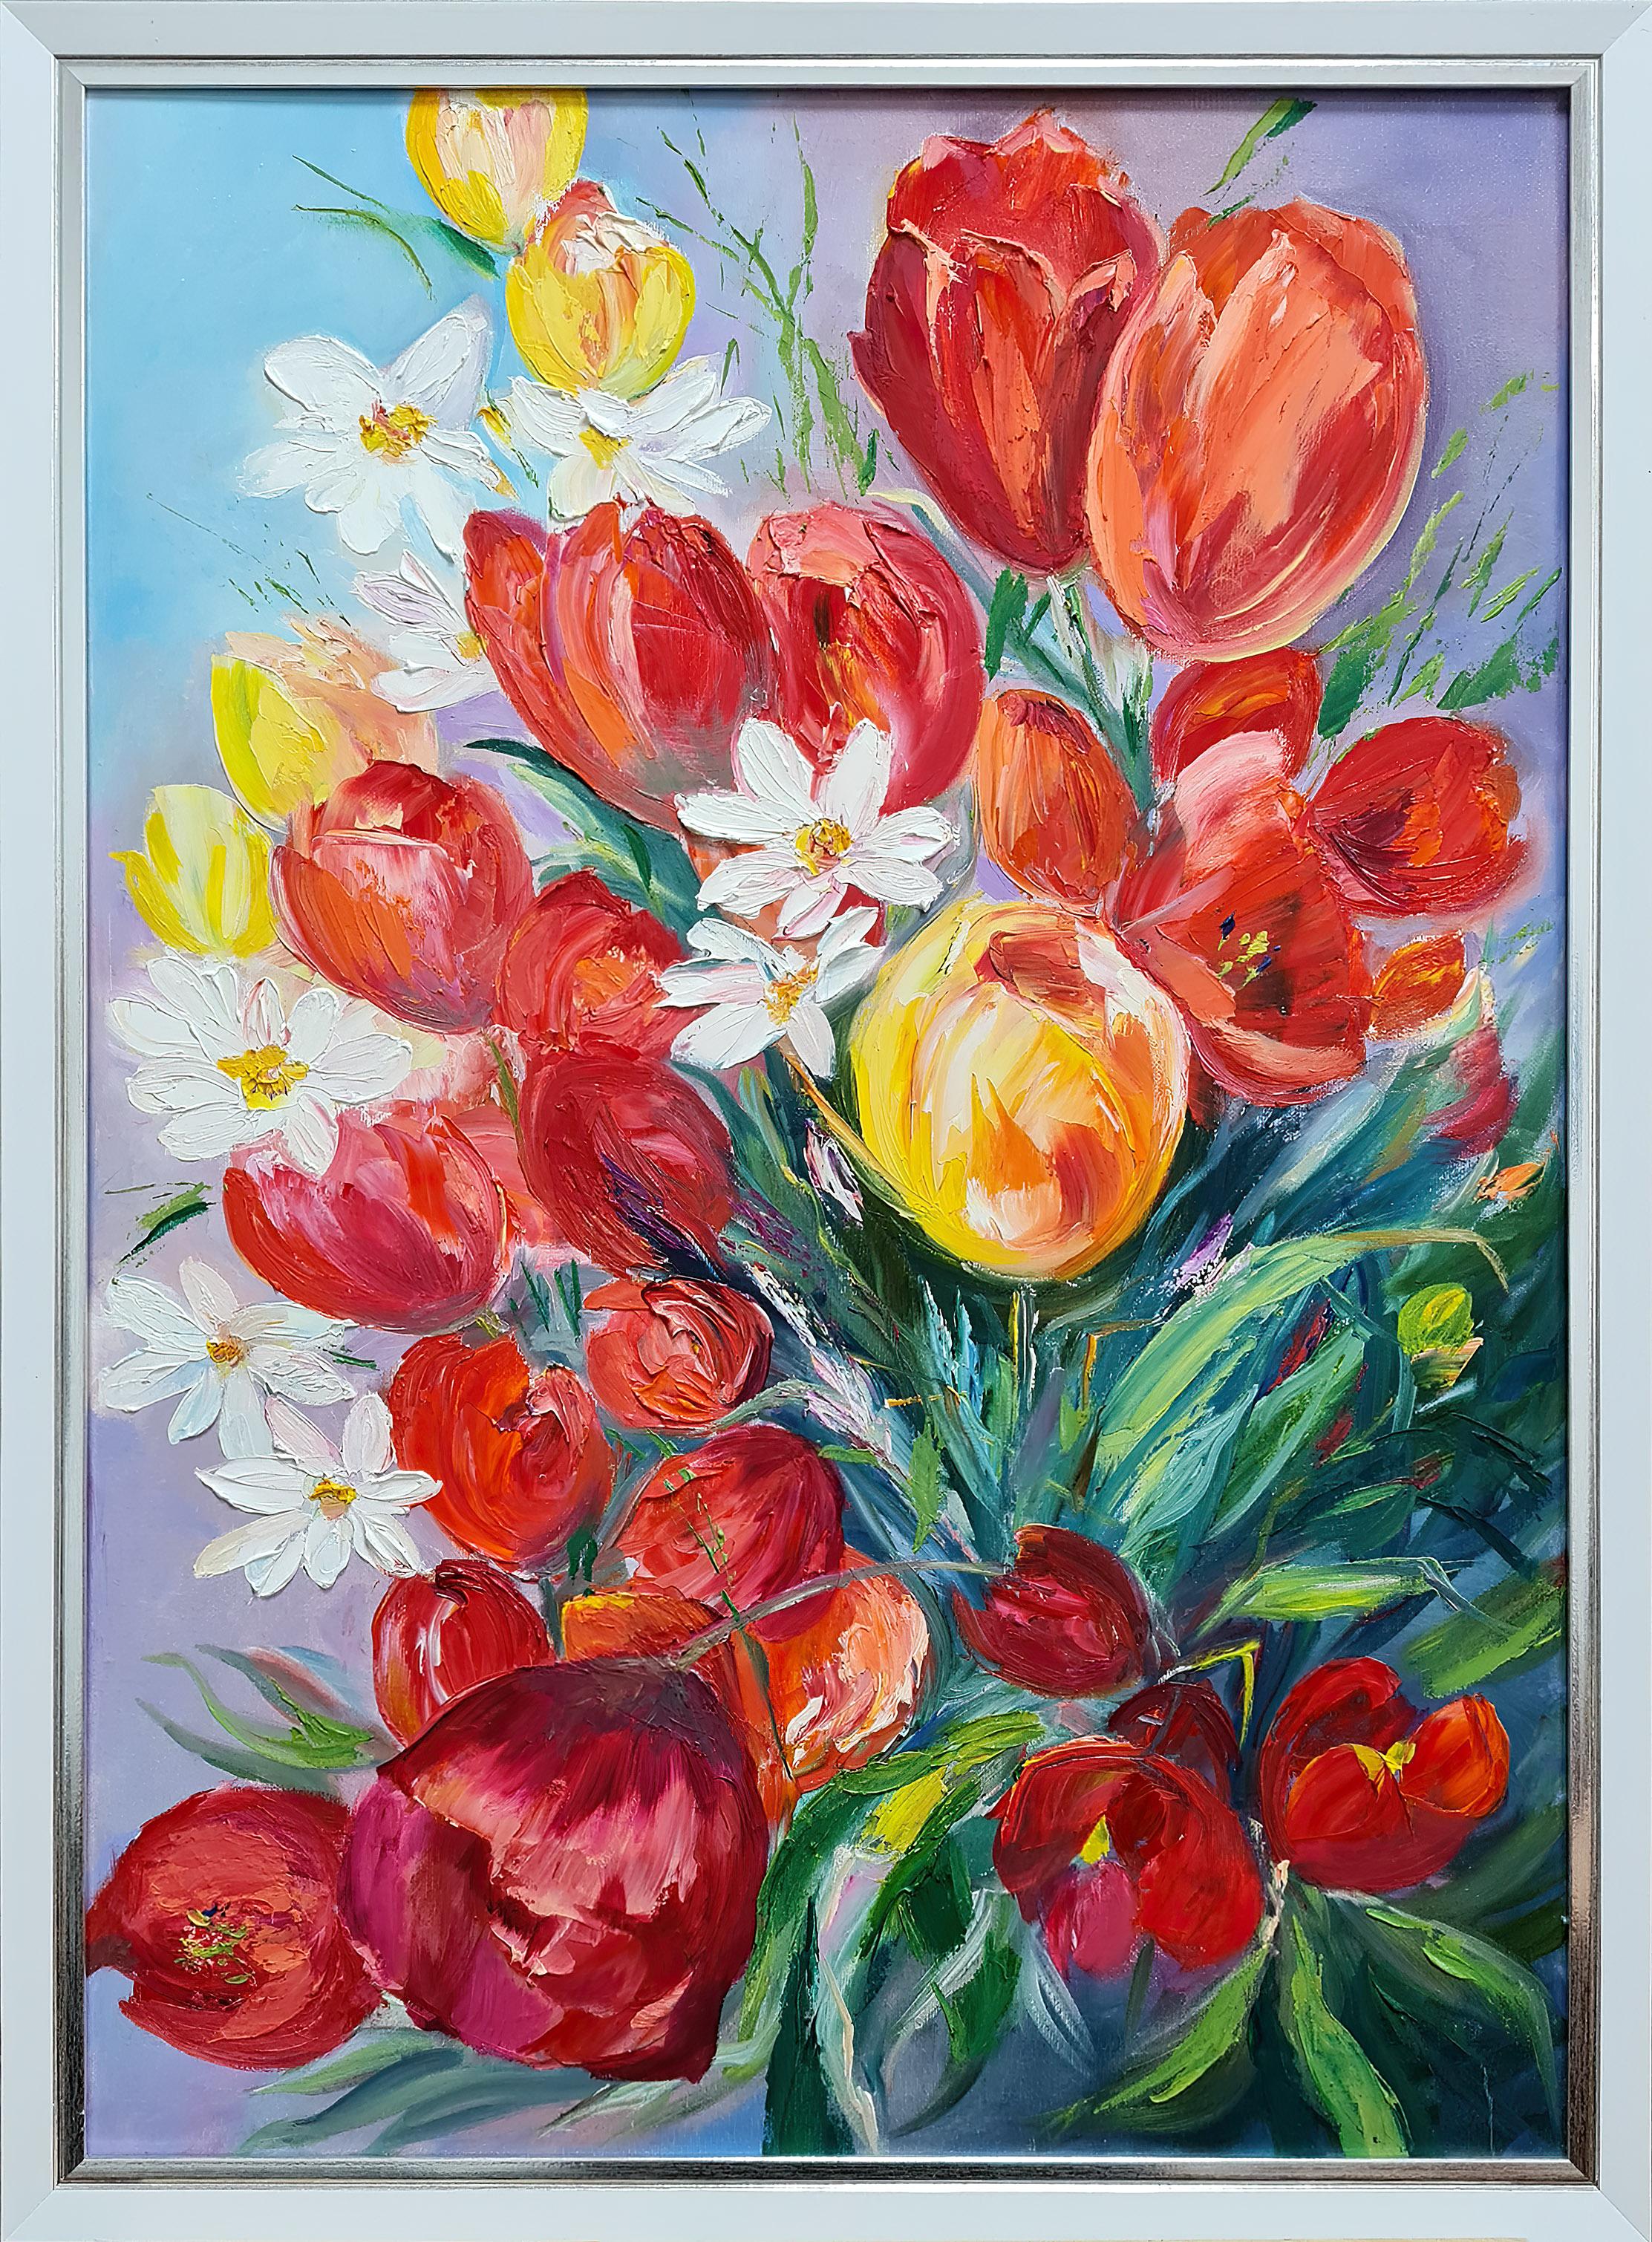  « Un bouquet de tulipes lumineux », peinture à l'huile de Volskaya Lilya - Painting de Lilya Volskaya